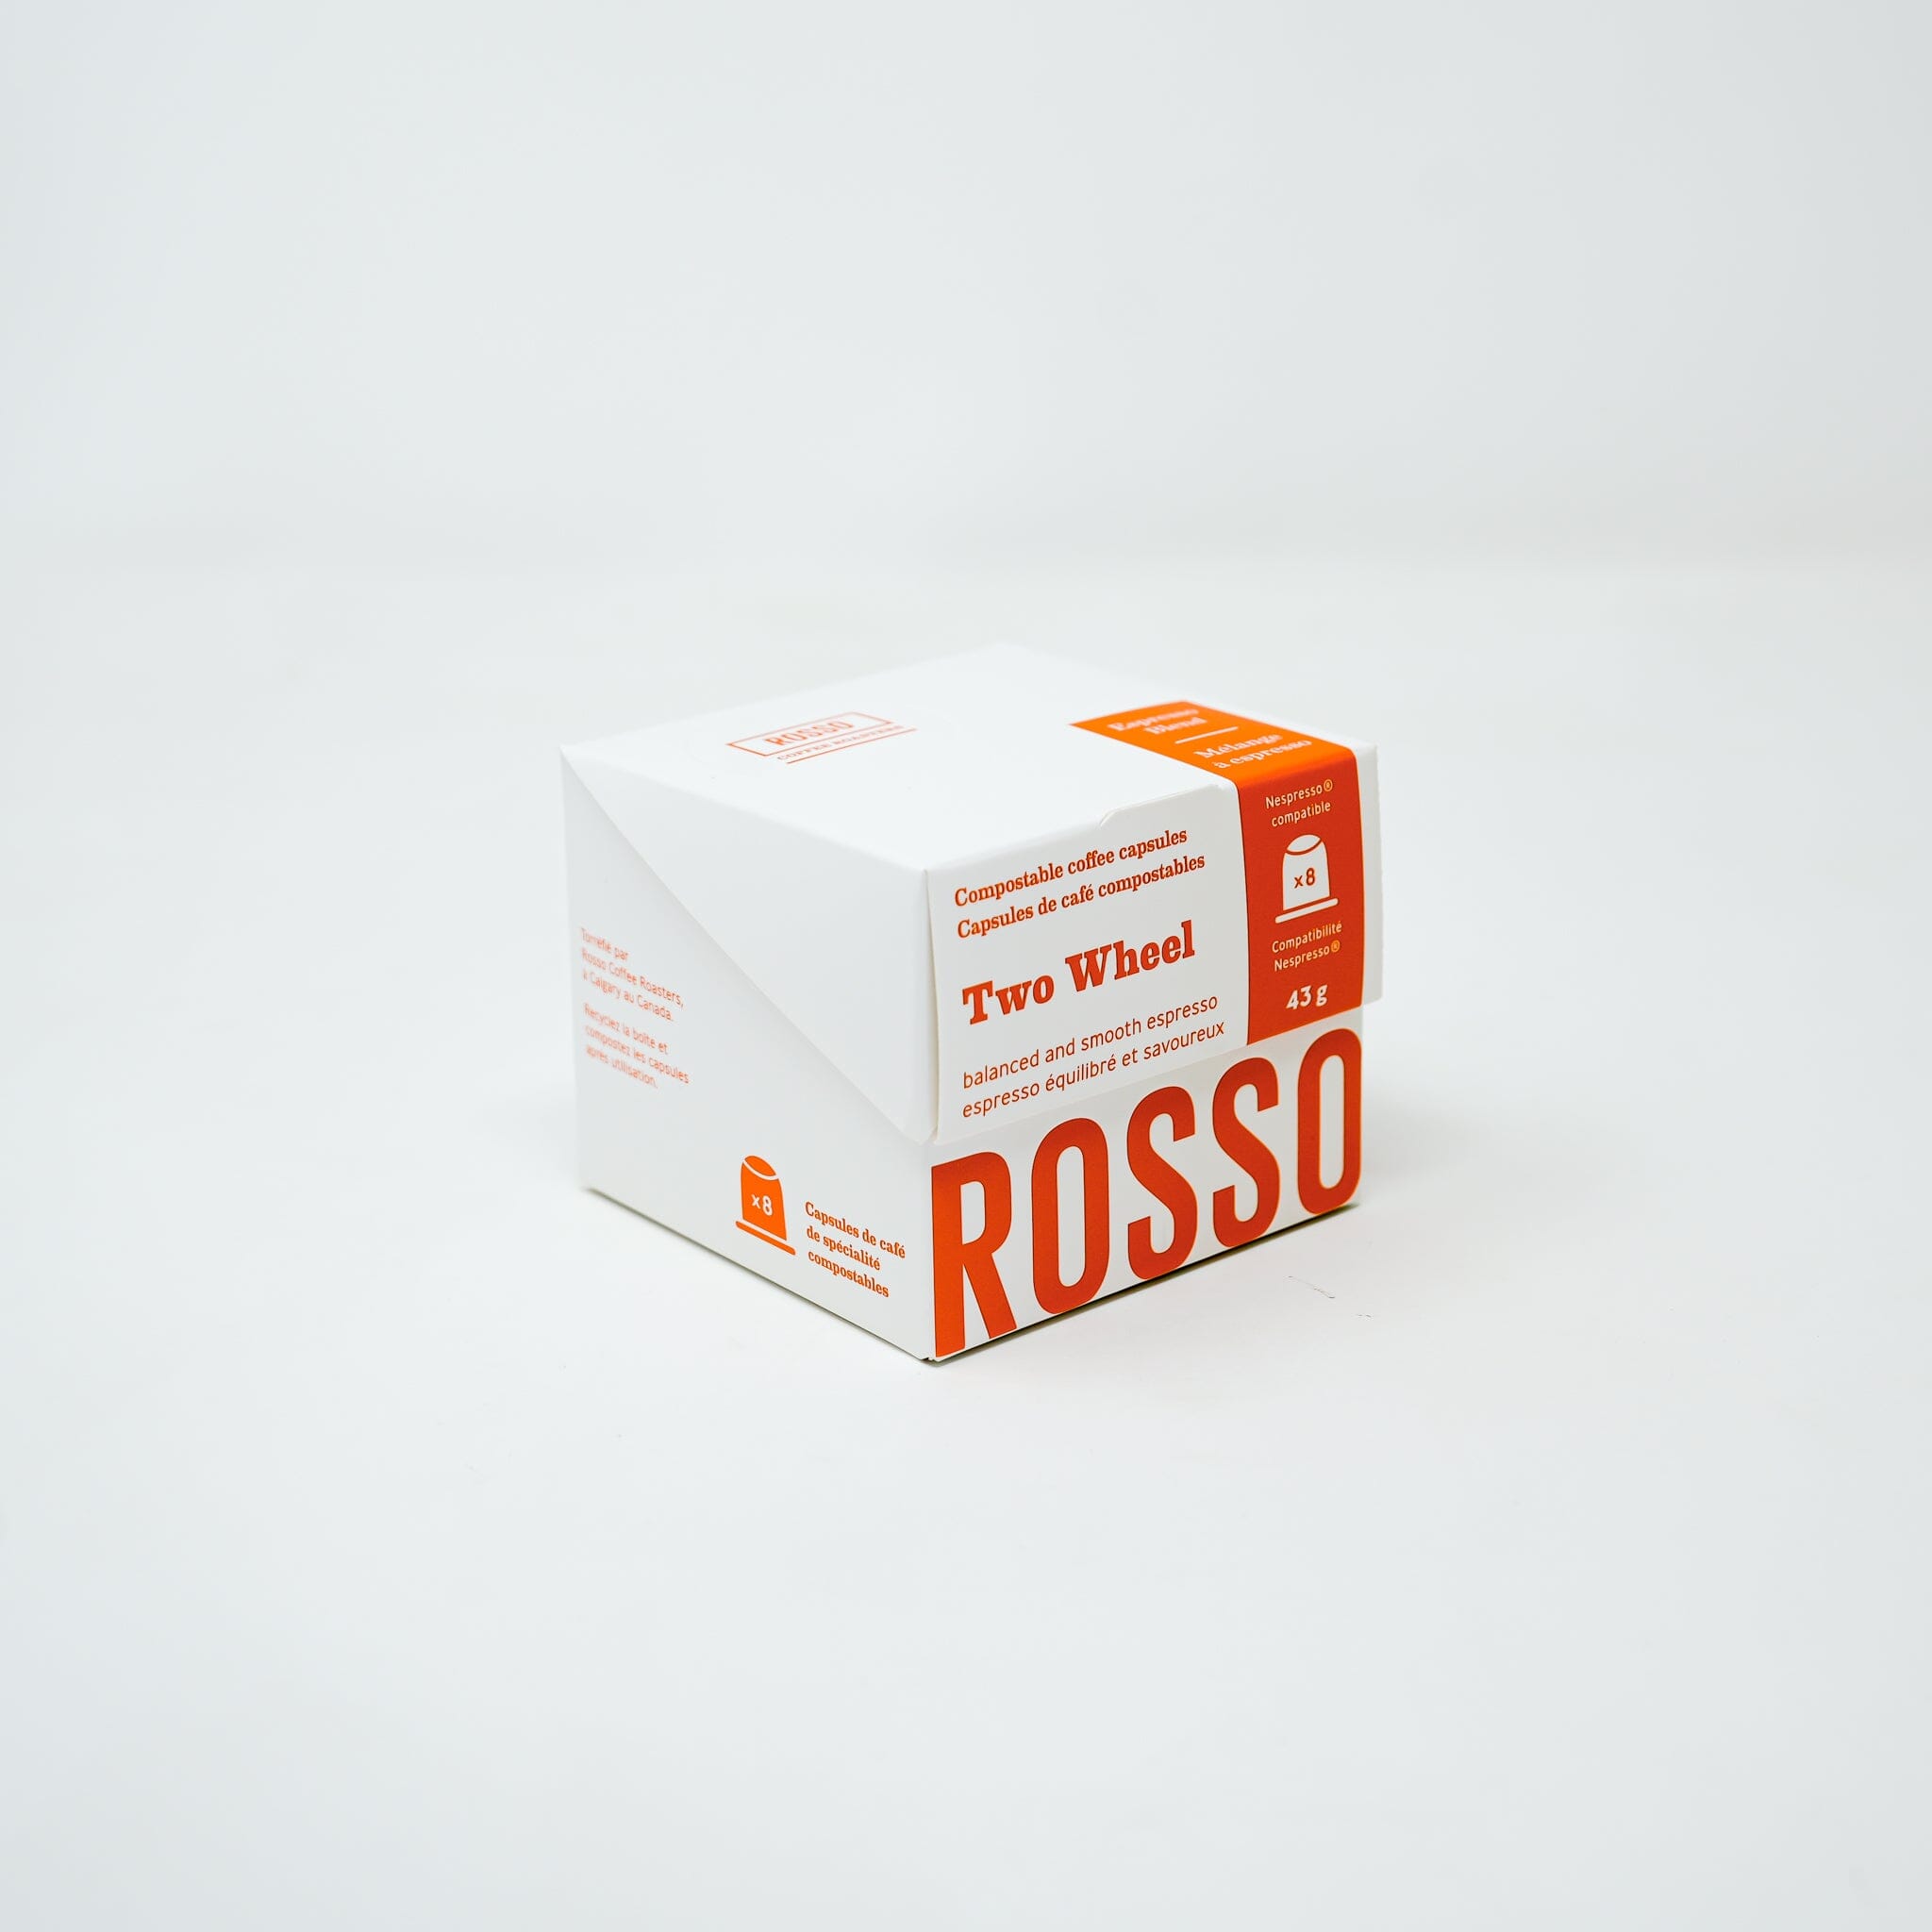 Rosso Caffe Nespresso pods pass the taste test